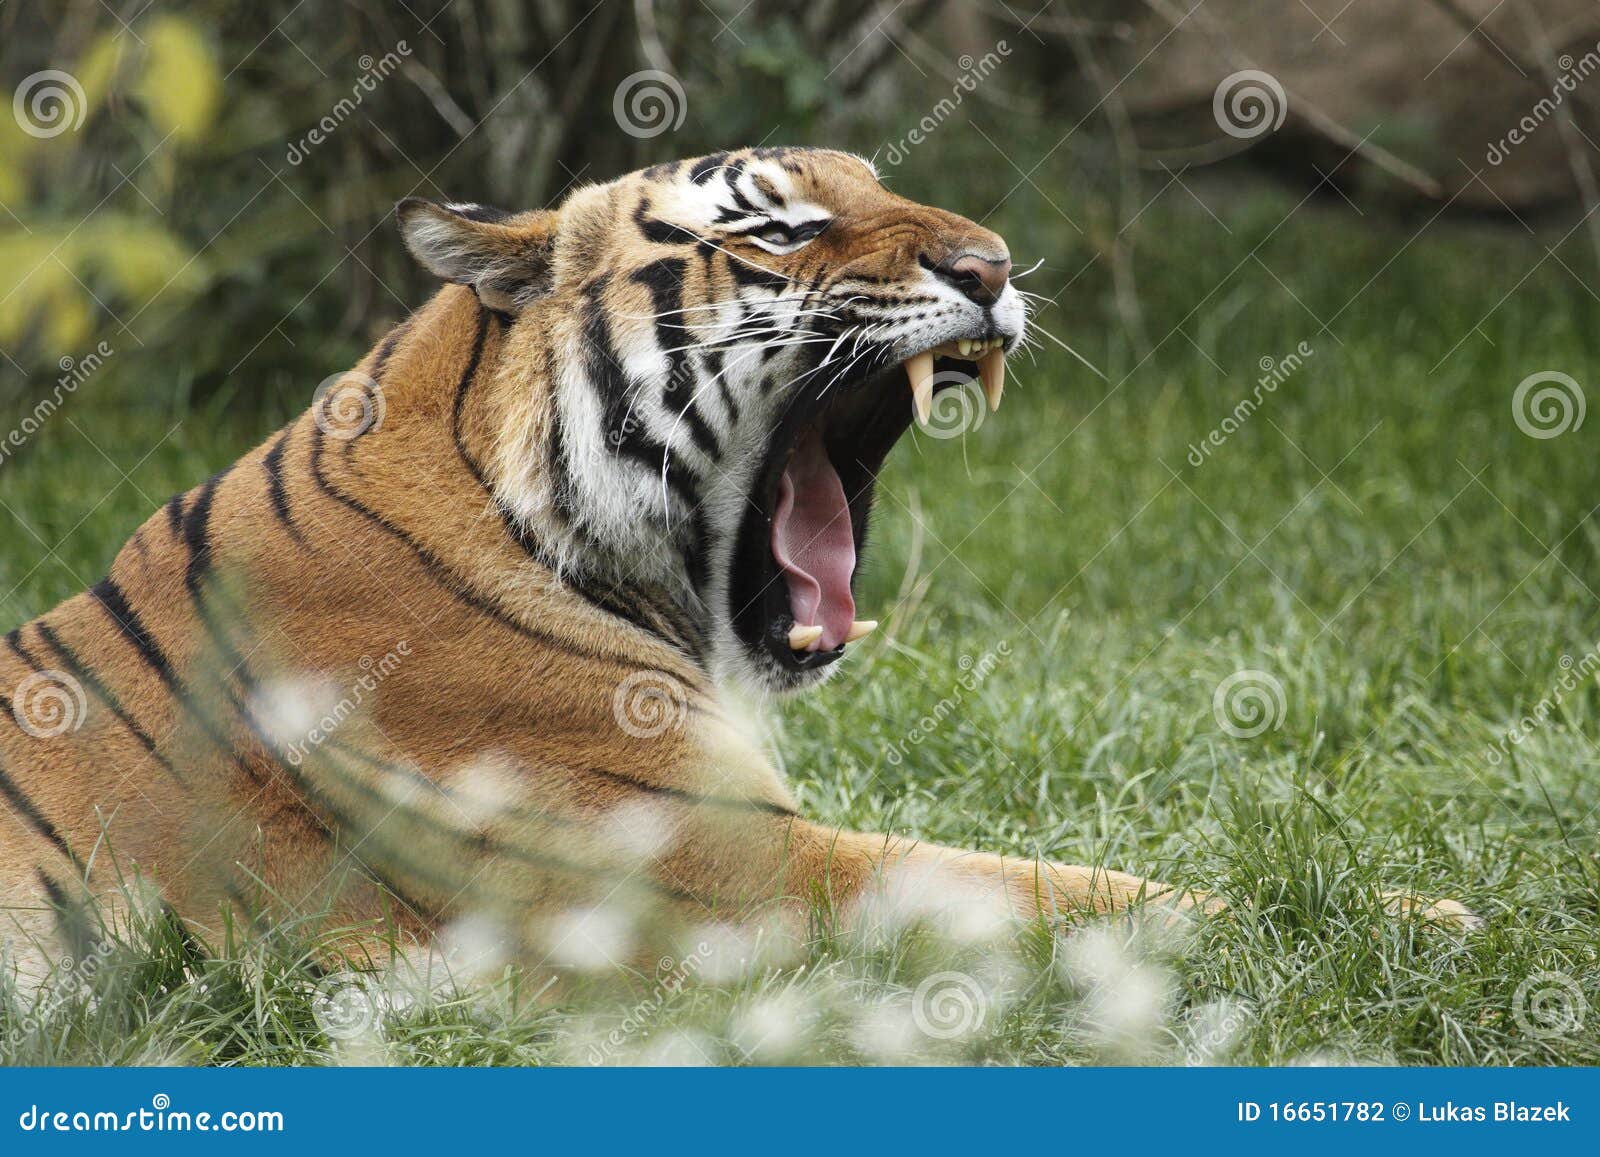 yawning amur tiger